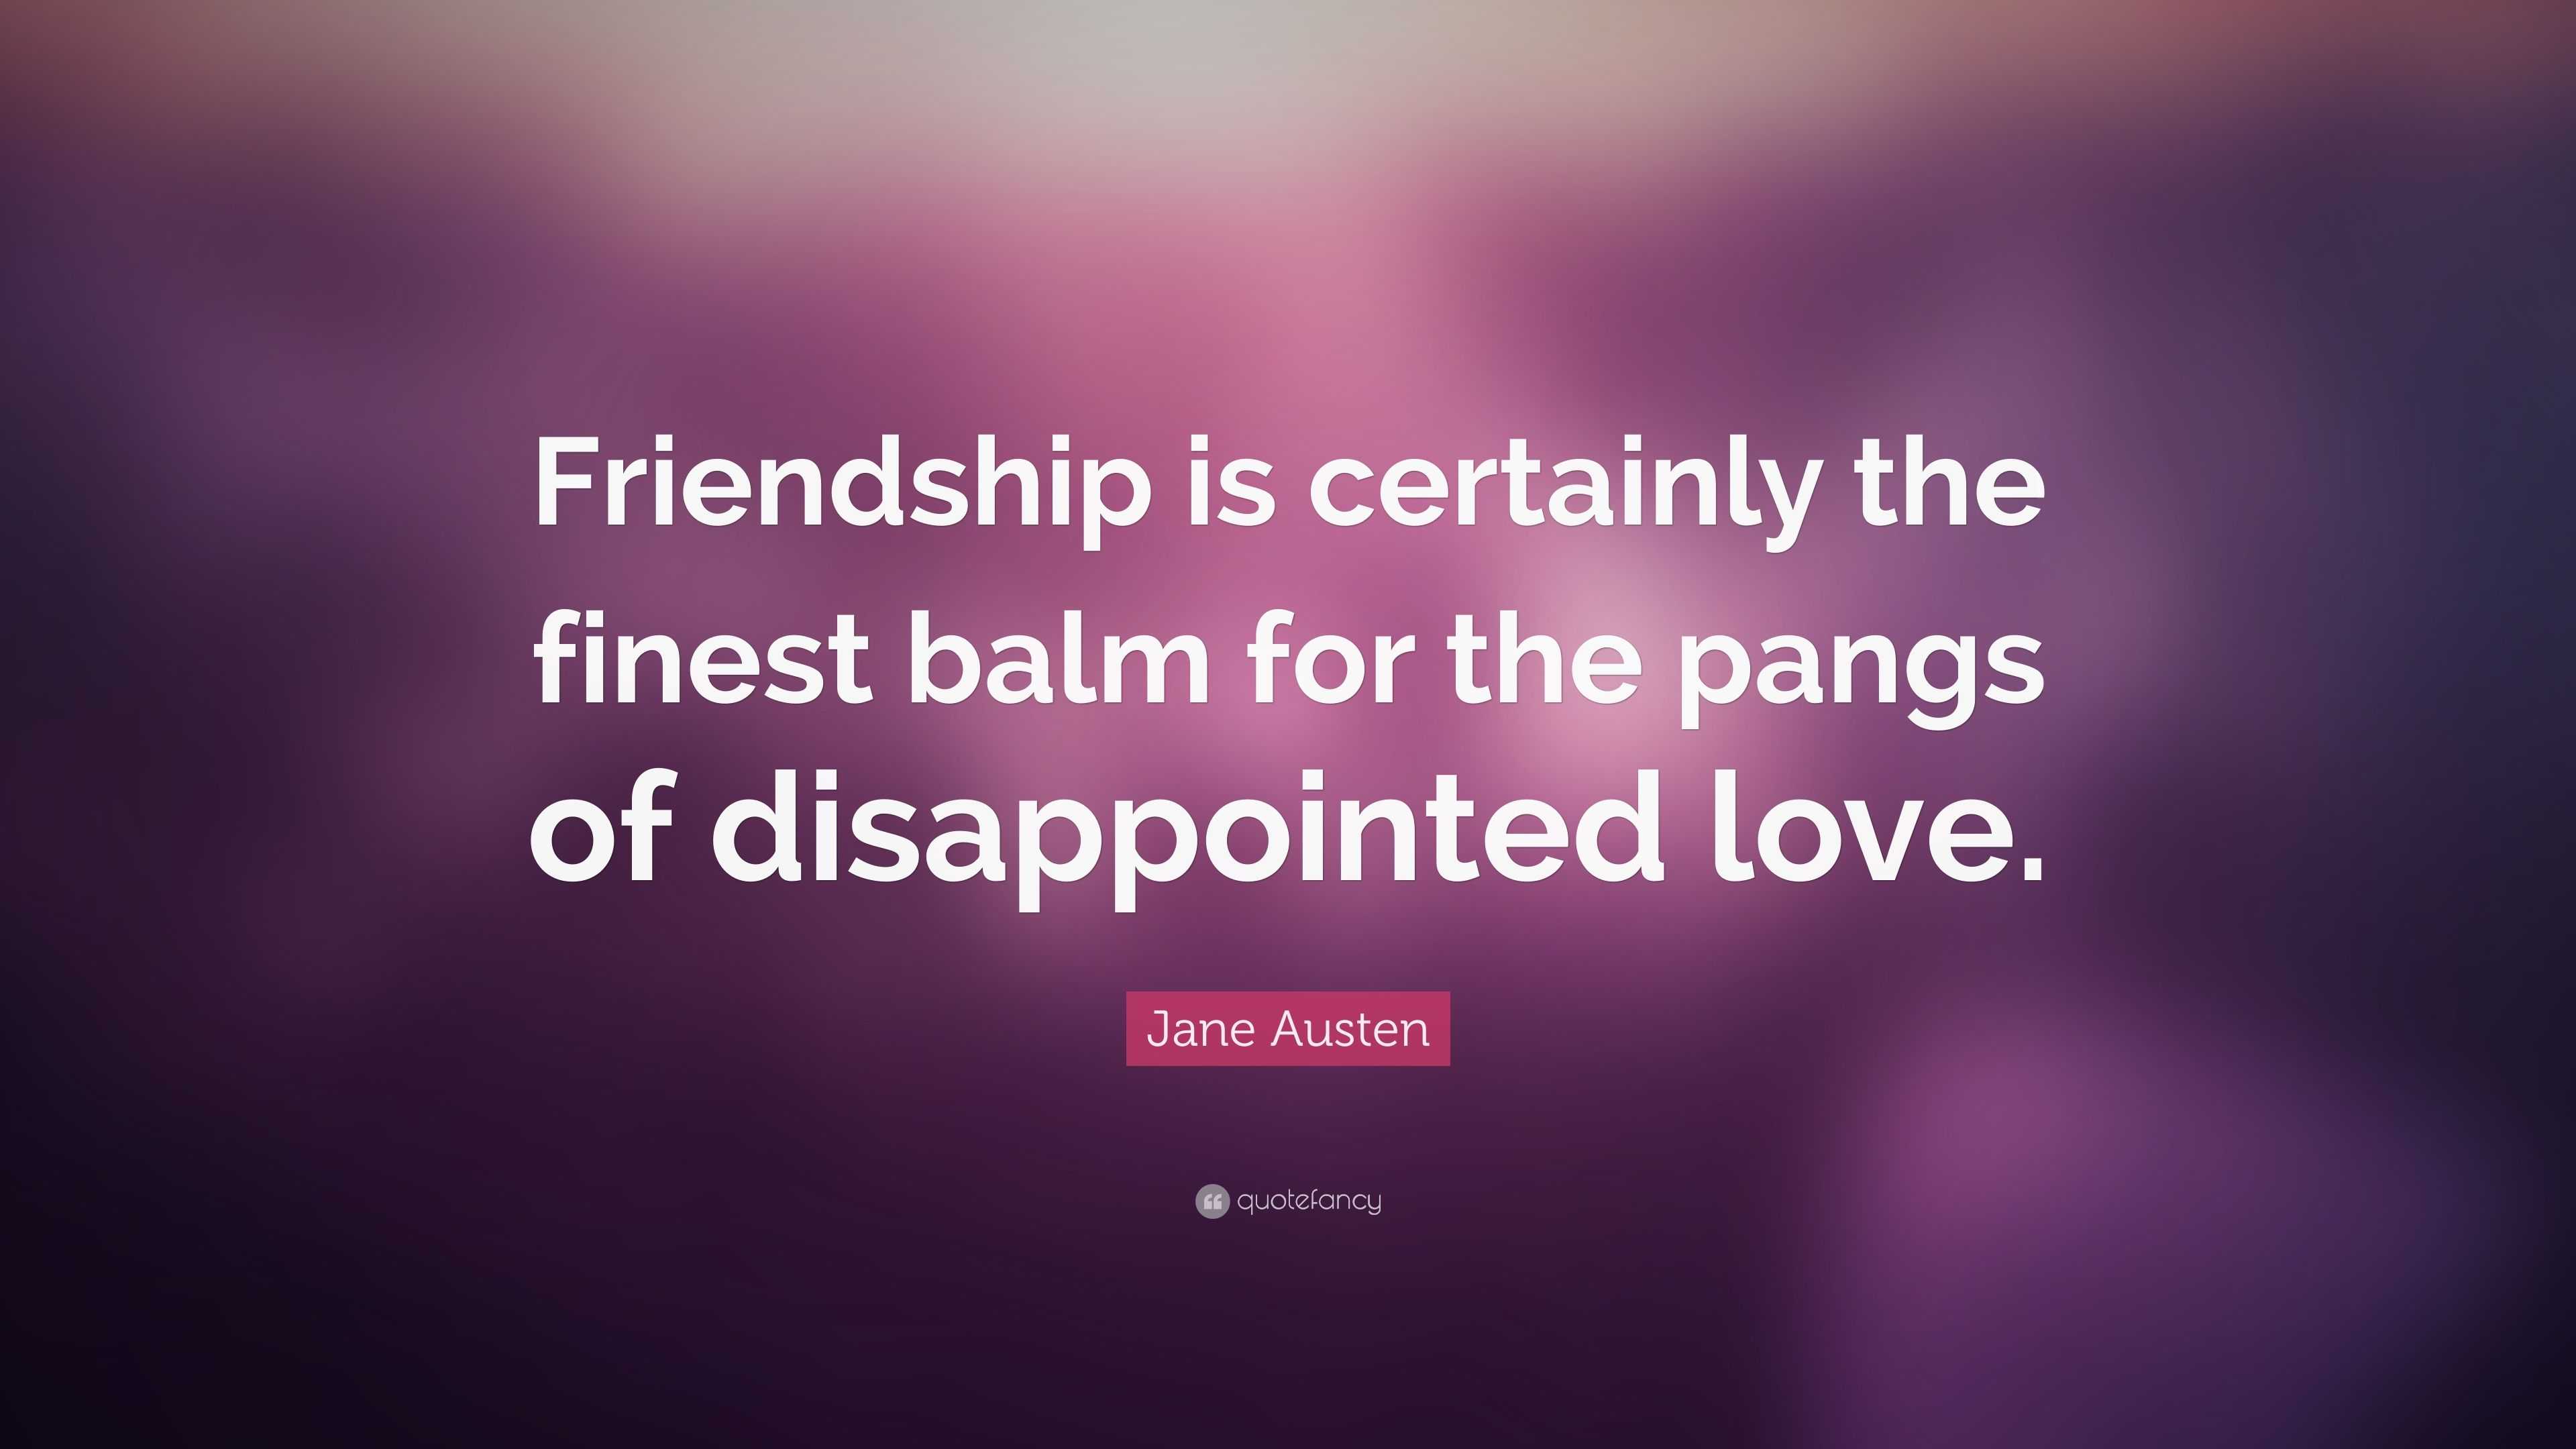 love and friendship summary jane austen